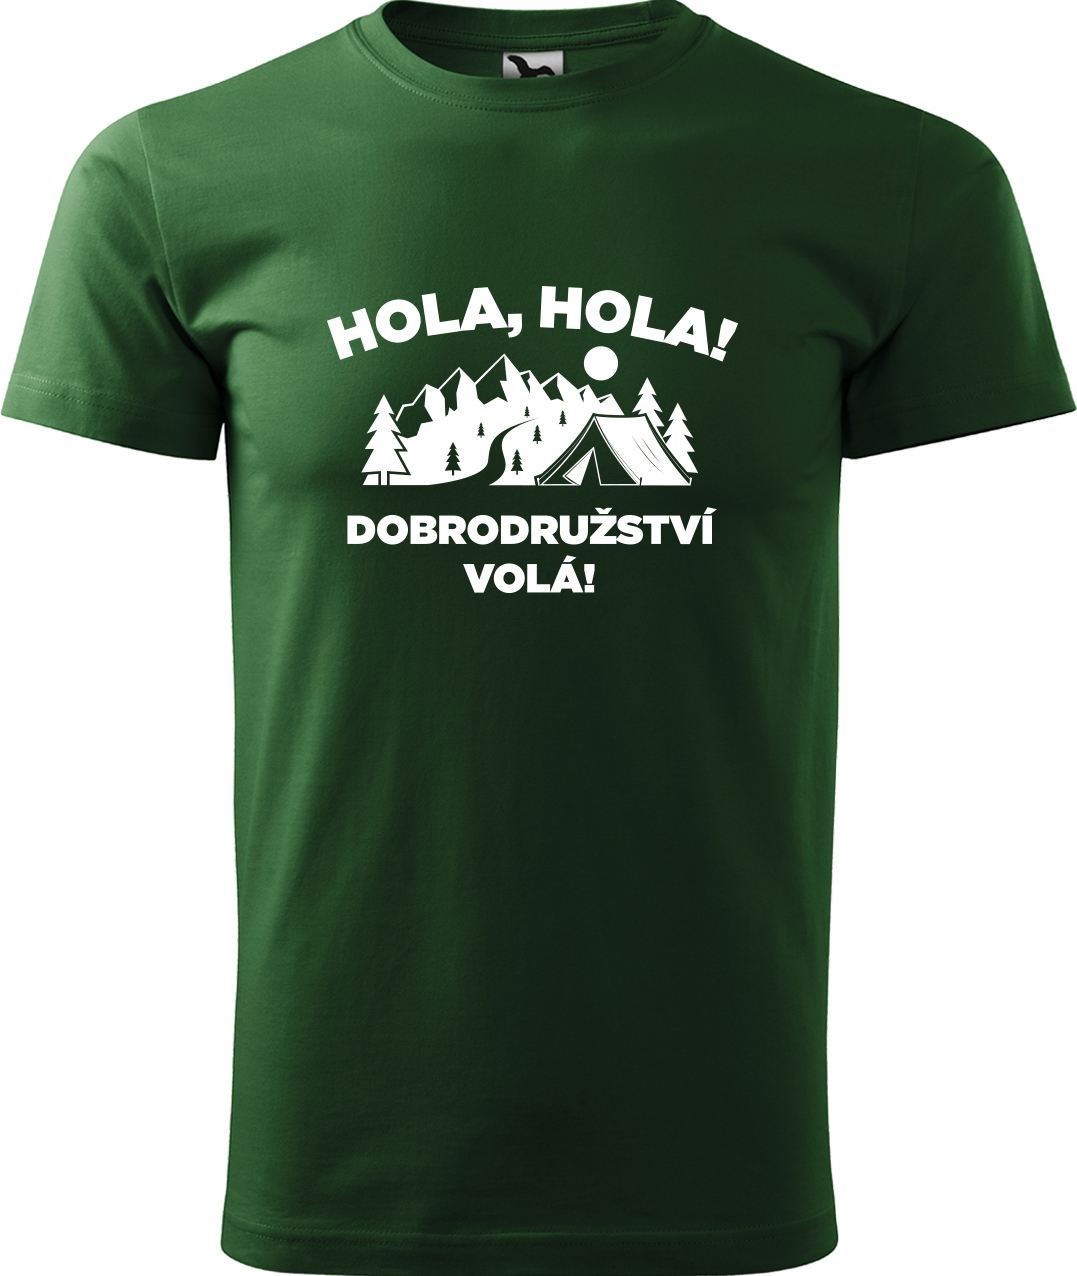 Pánské cestovatelské tričko - Hola hola! Dobrodružství volá! Velikost: 3XL, Barva: Lahvově zelená (06), Střih: pánský